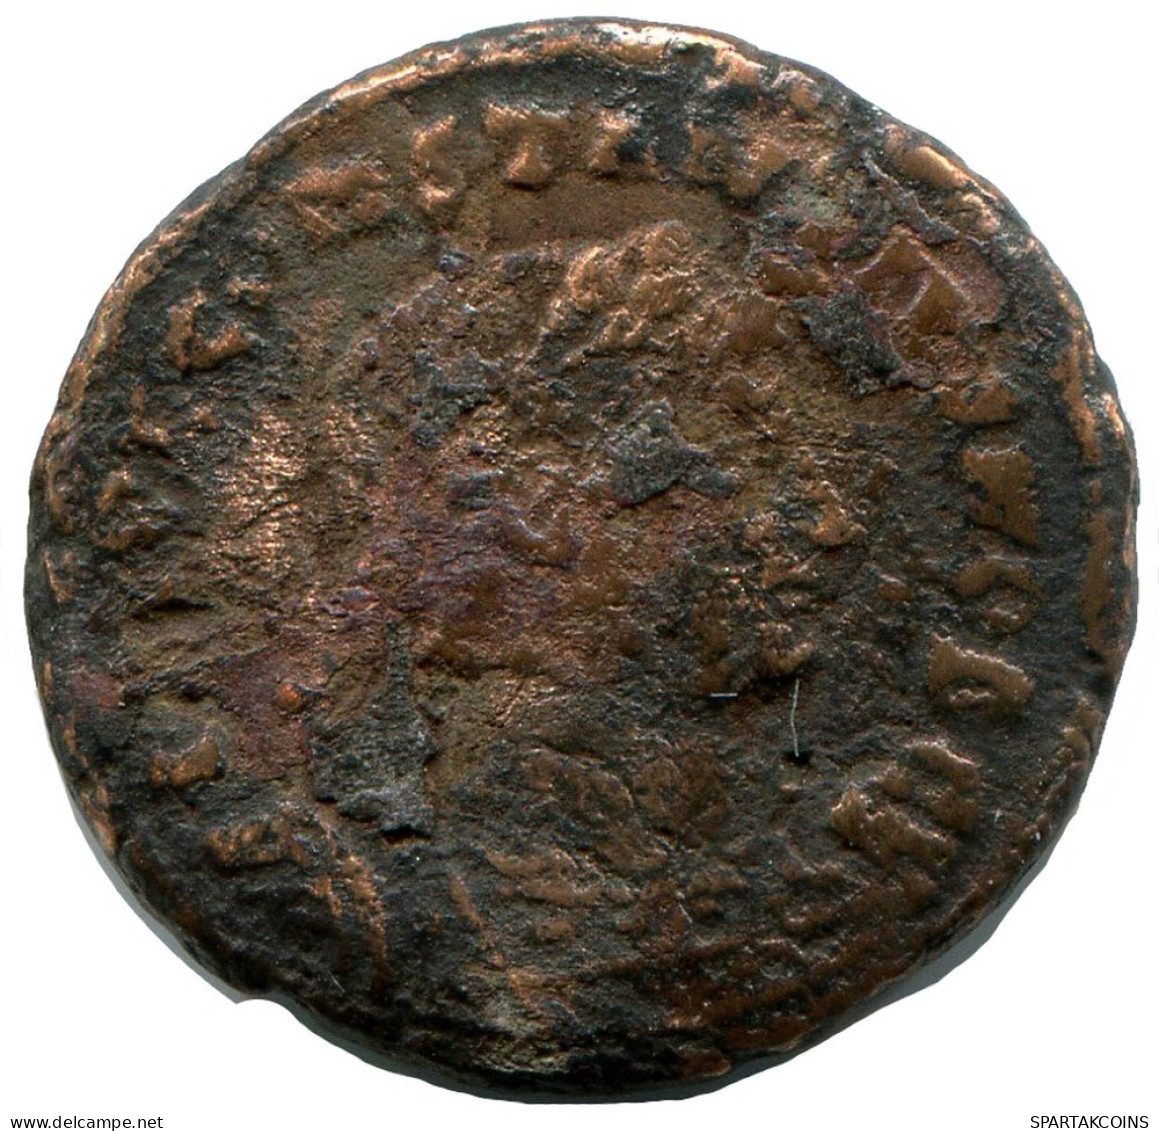 CONSTANTIUS II MINTED IN ALEKSANDRIA FOUND IN IHNASYAH HOARD #ANC10453.14.E.A - Der Christlischen Kaiser (307 / 363)